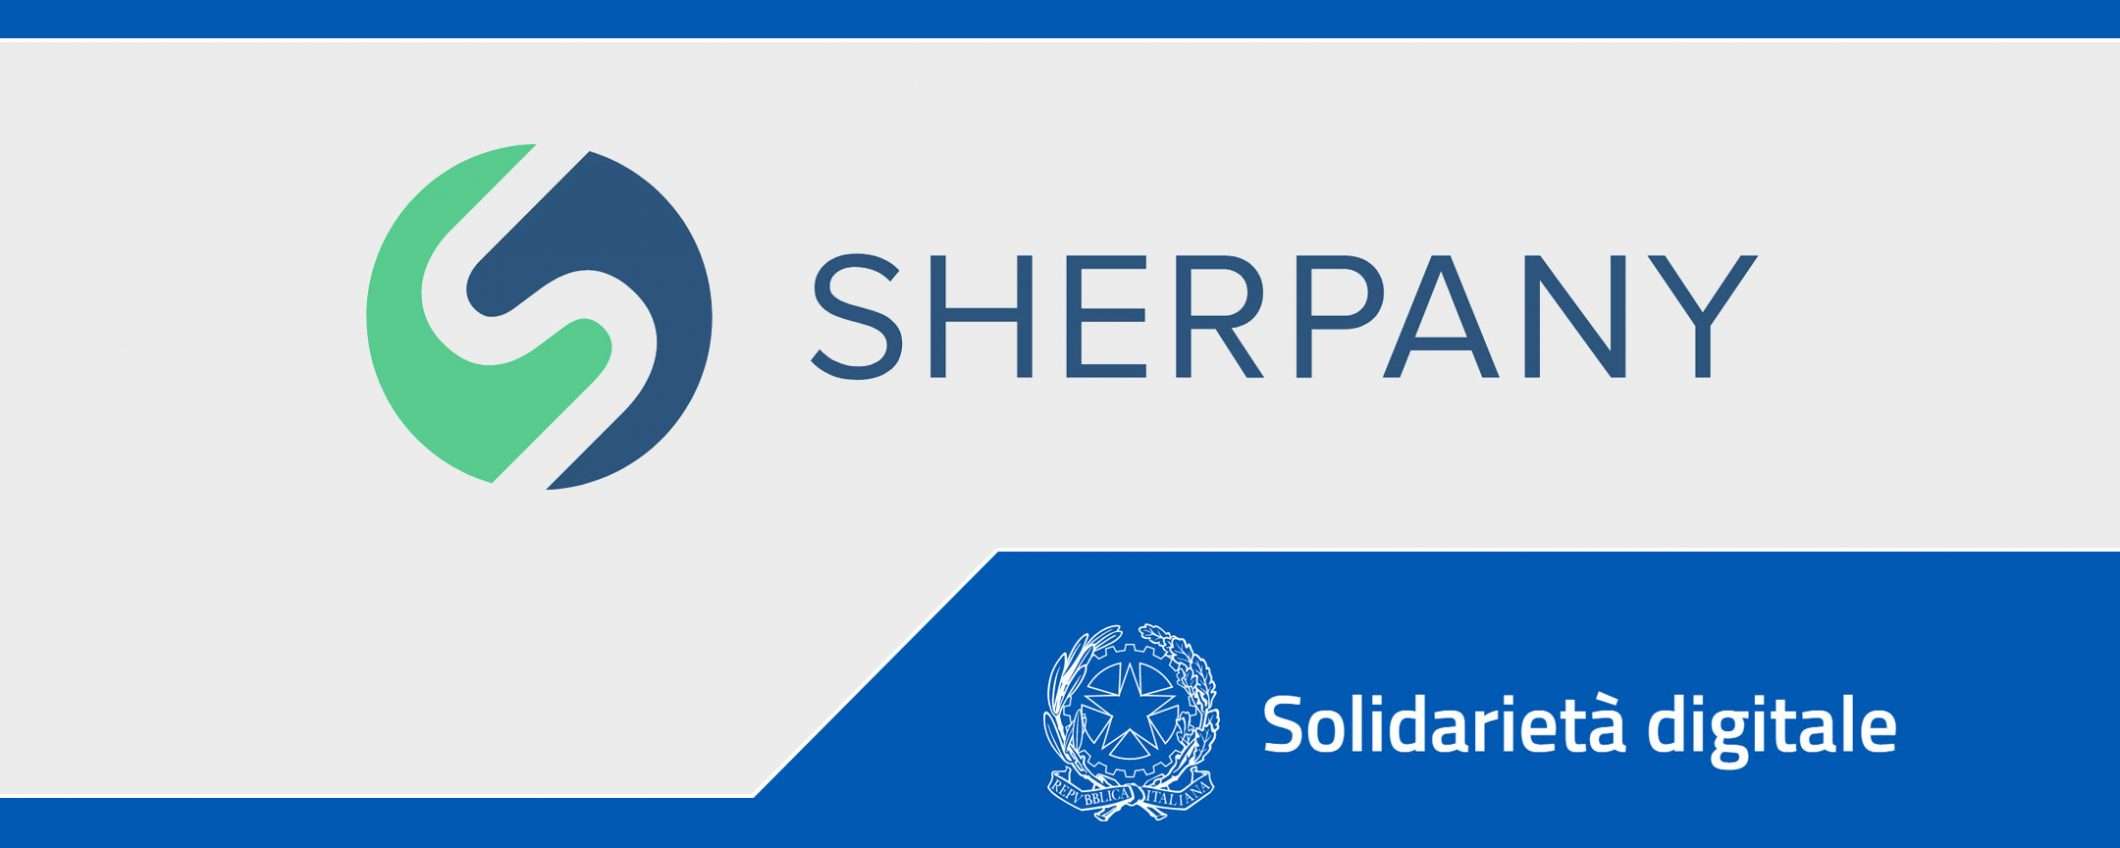 Solidarietà Digitale: Sherpany per le riunioni